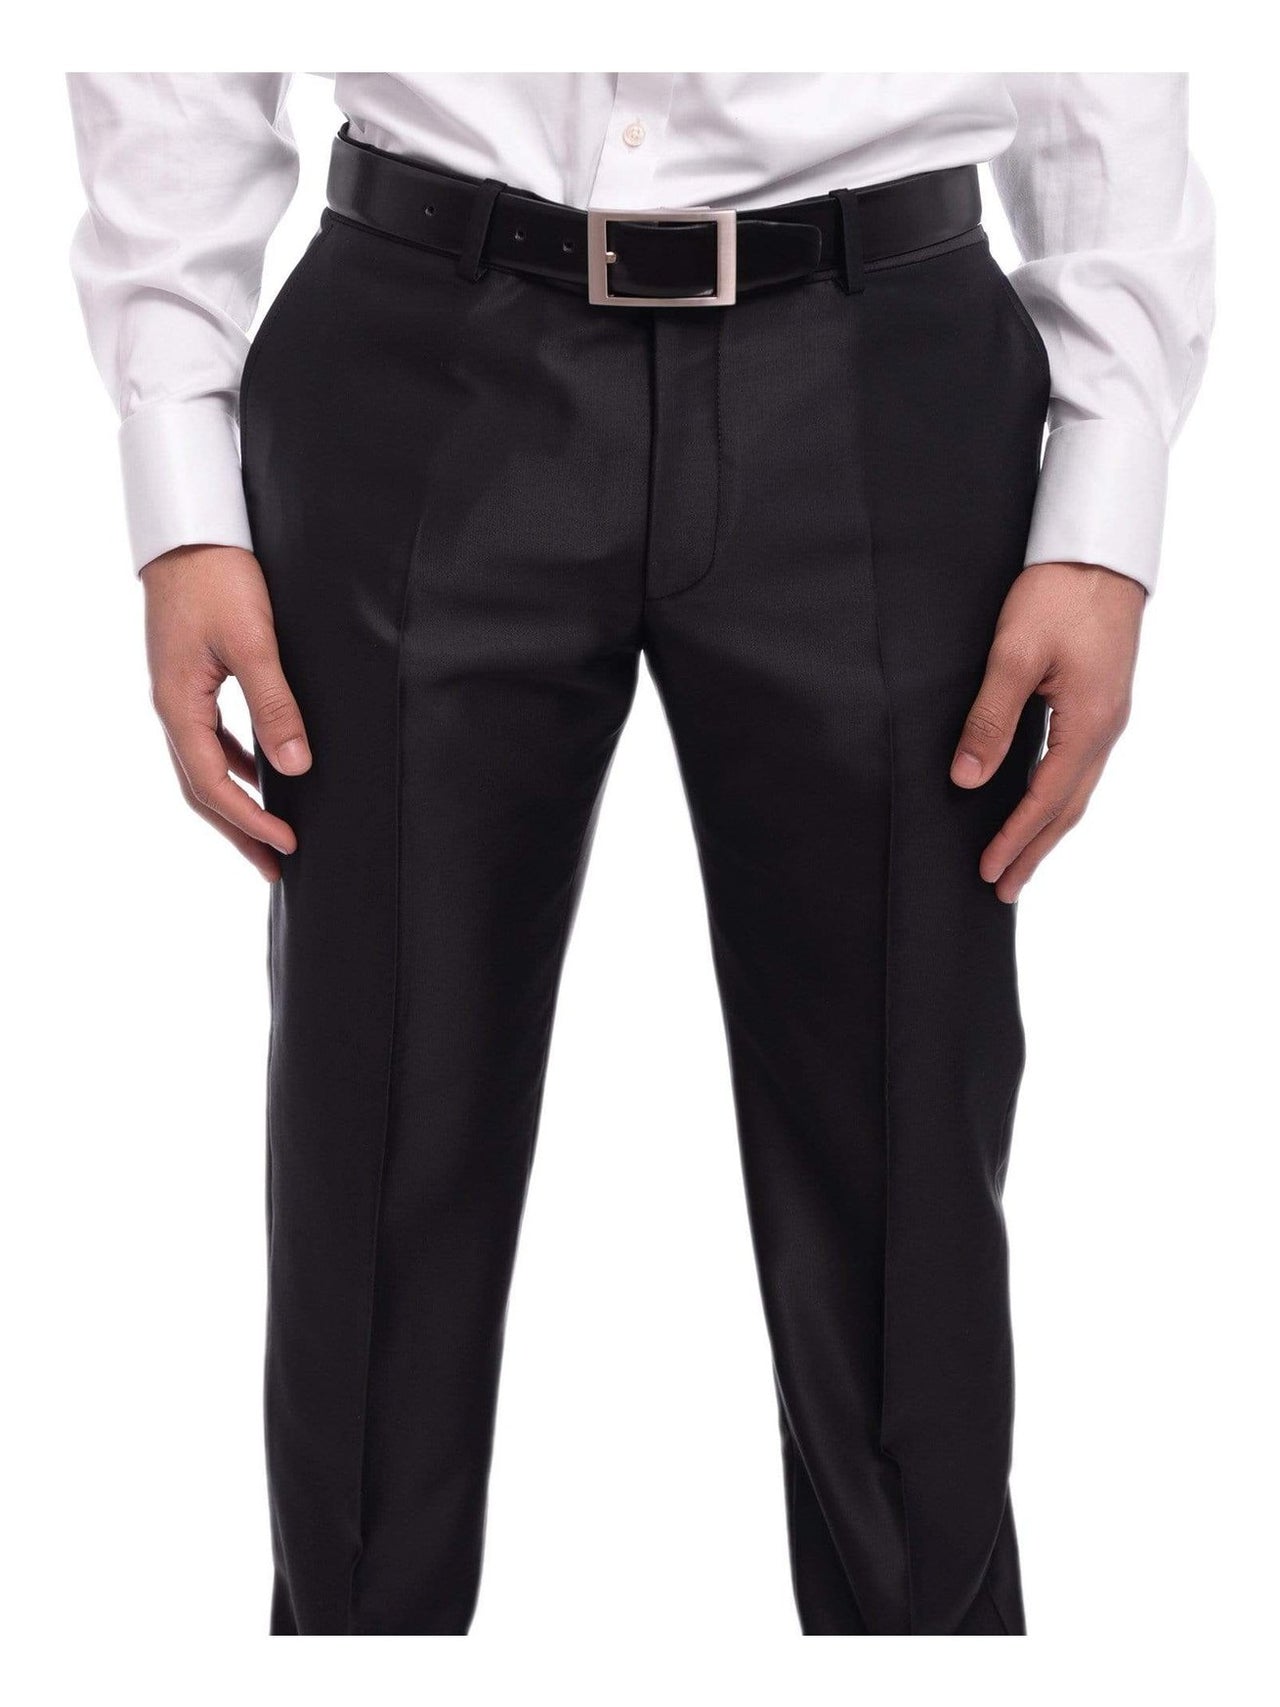 Emilio Guseppe TUXEDOS Emilio Gueseppe Slim Fit Burgundy & Black Check Tuxedo Suit With Shawl Lapels